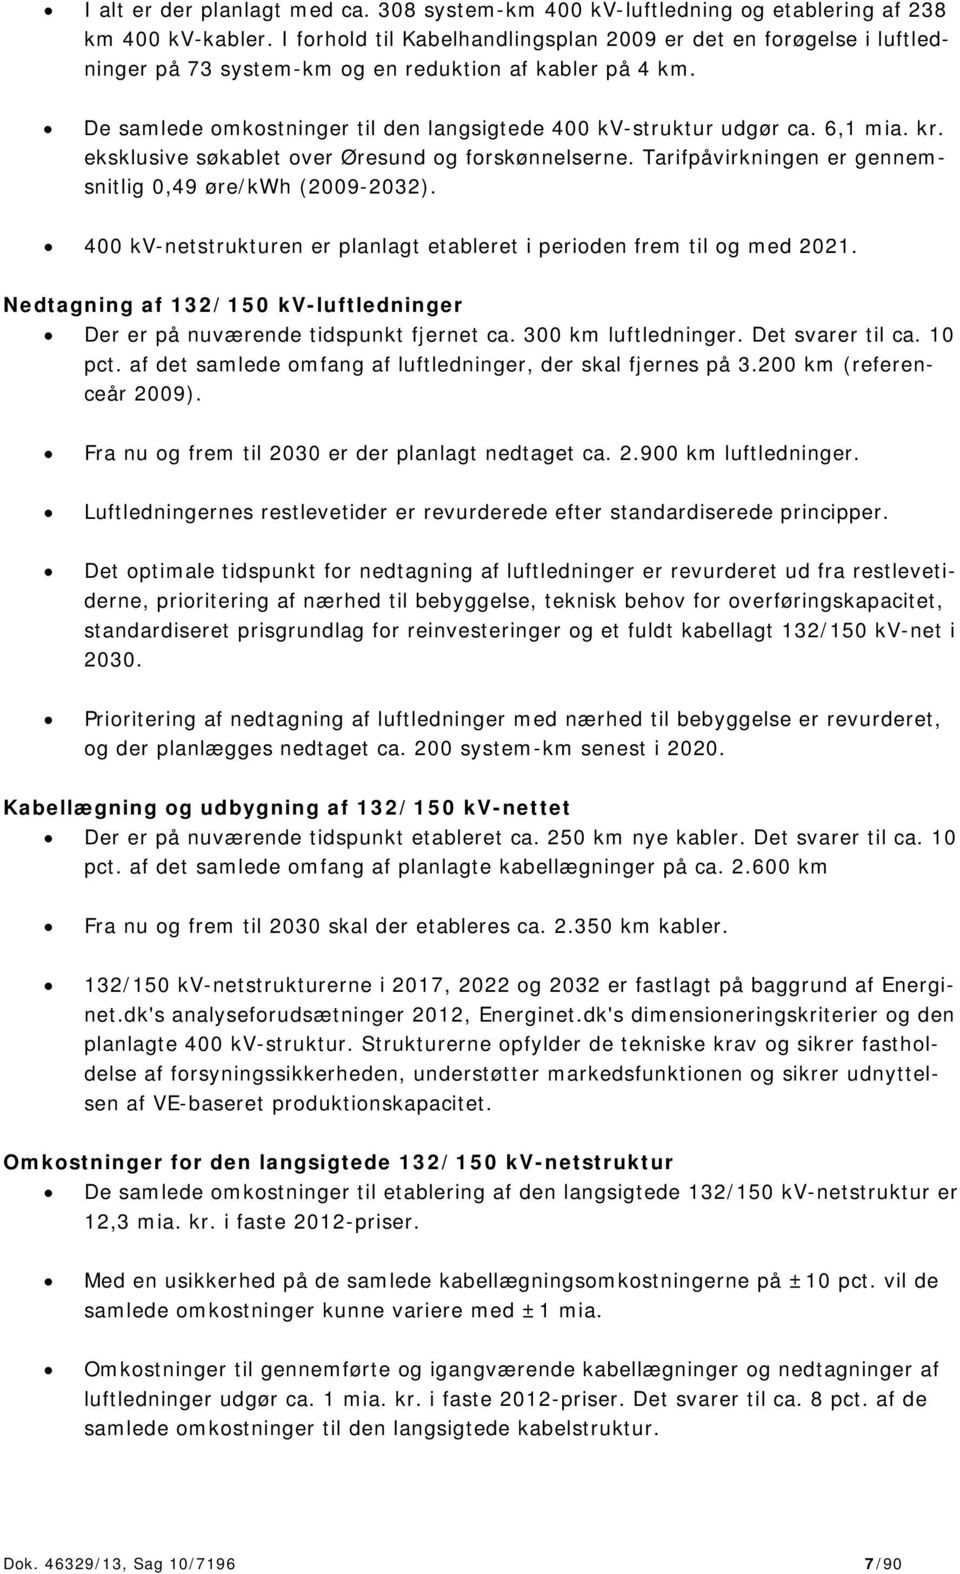 6,1 mia. kr. eksklusive søkablet over Øresund og forskønnelserne. Tarifpåvirkningen er gennemsnitlig 0,49 øre/kwh (2009-2032).